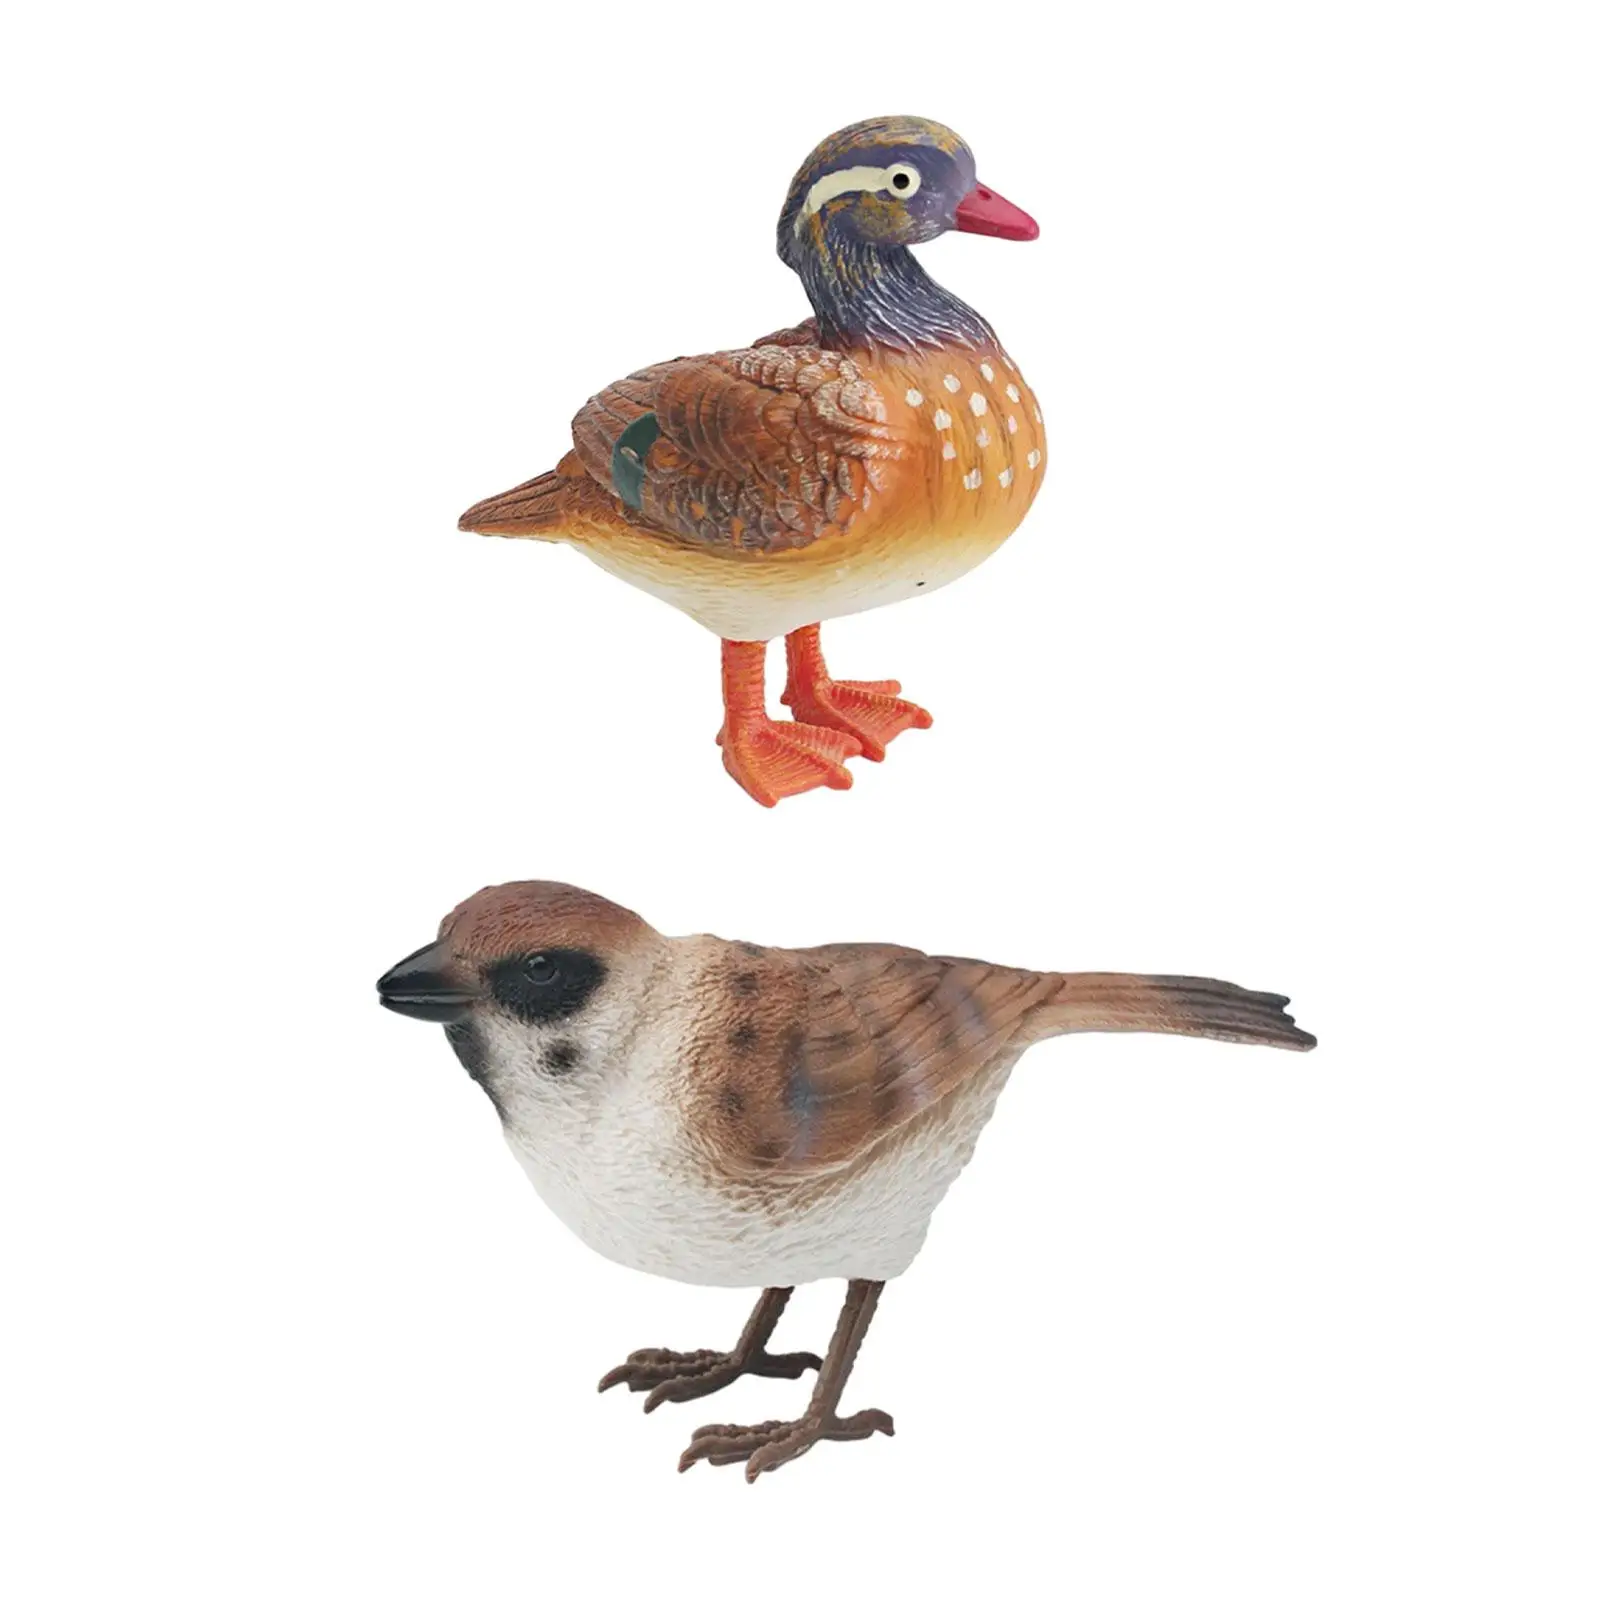 

Реалистичная фигурка птицы, искусственная птица для детей, миниатюрная модель искусственной птицы, декоративные украшения